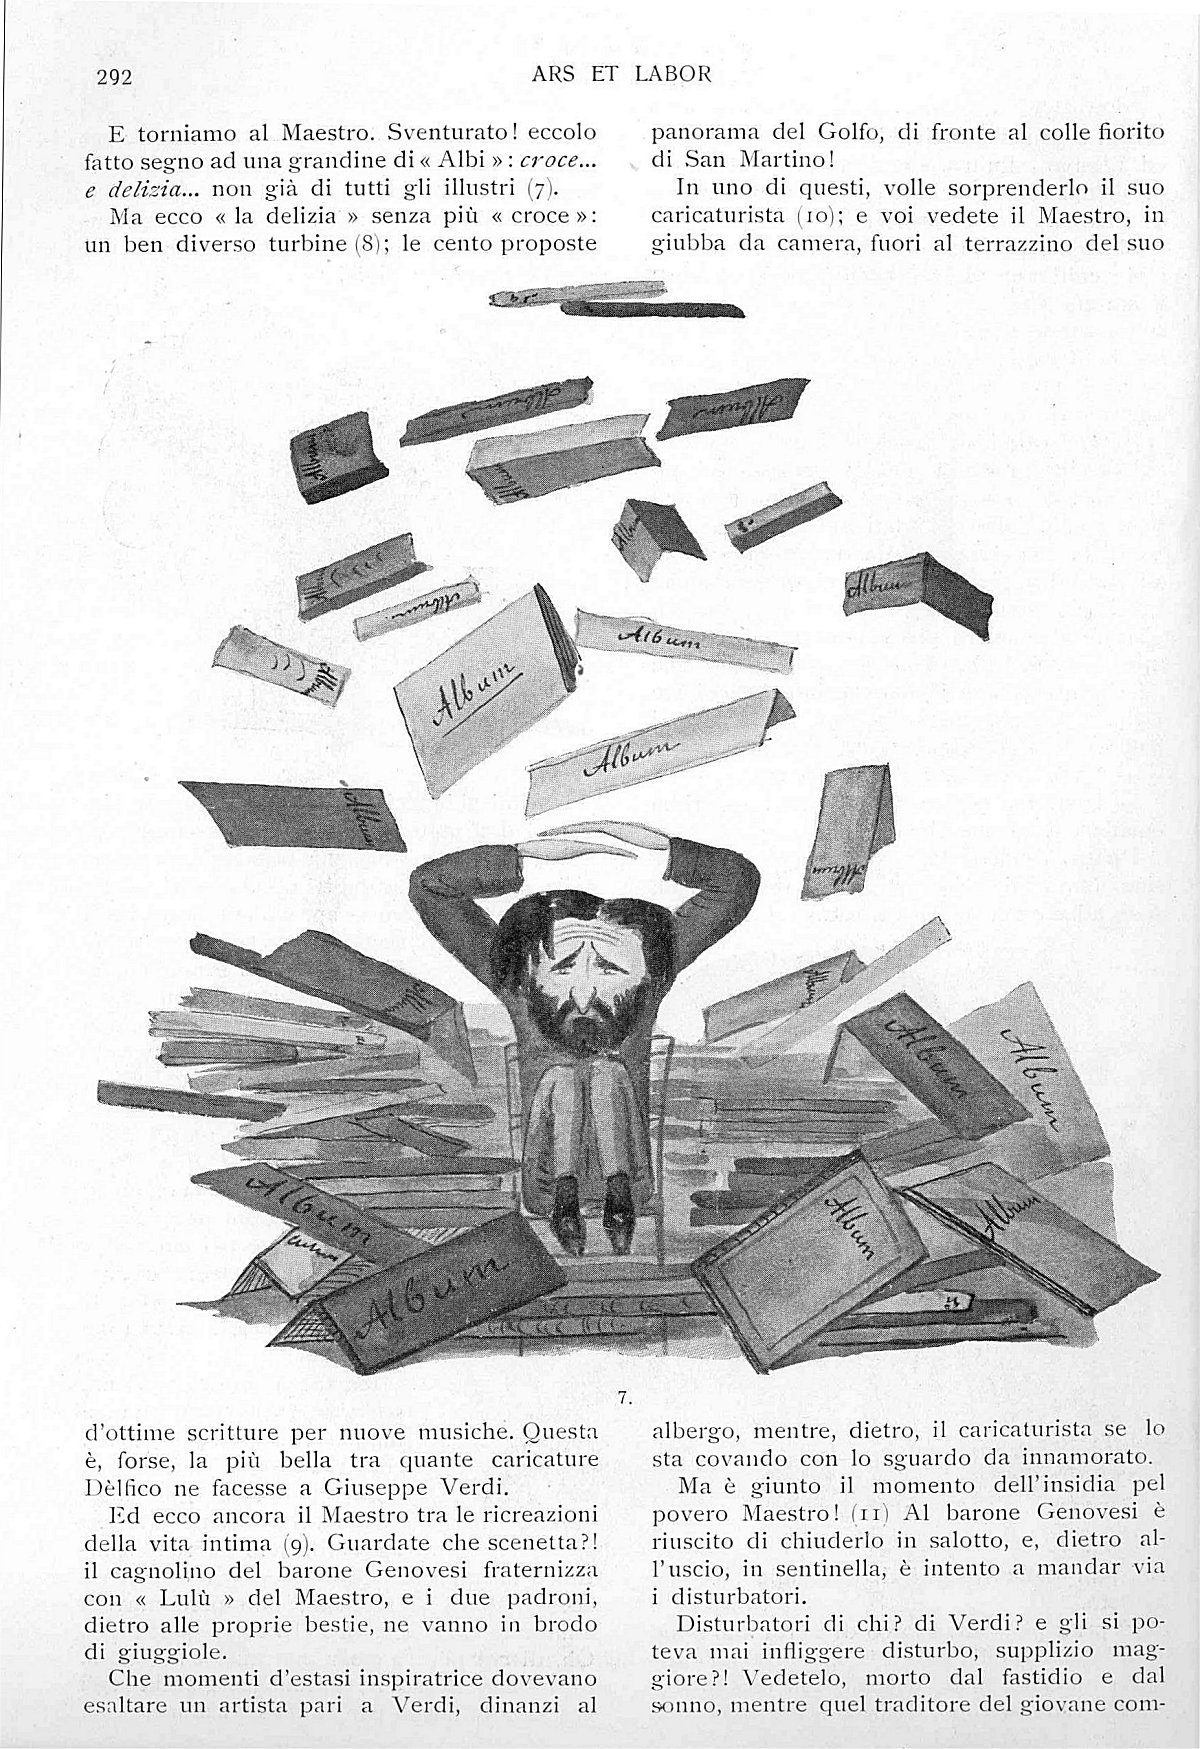 "Ars et Labor", Aprile 1906, anno 61°, n. 4, pag. 292